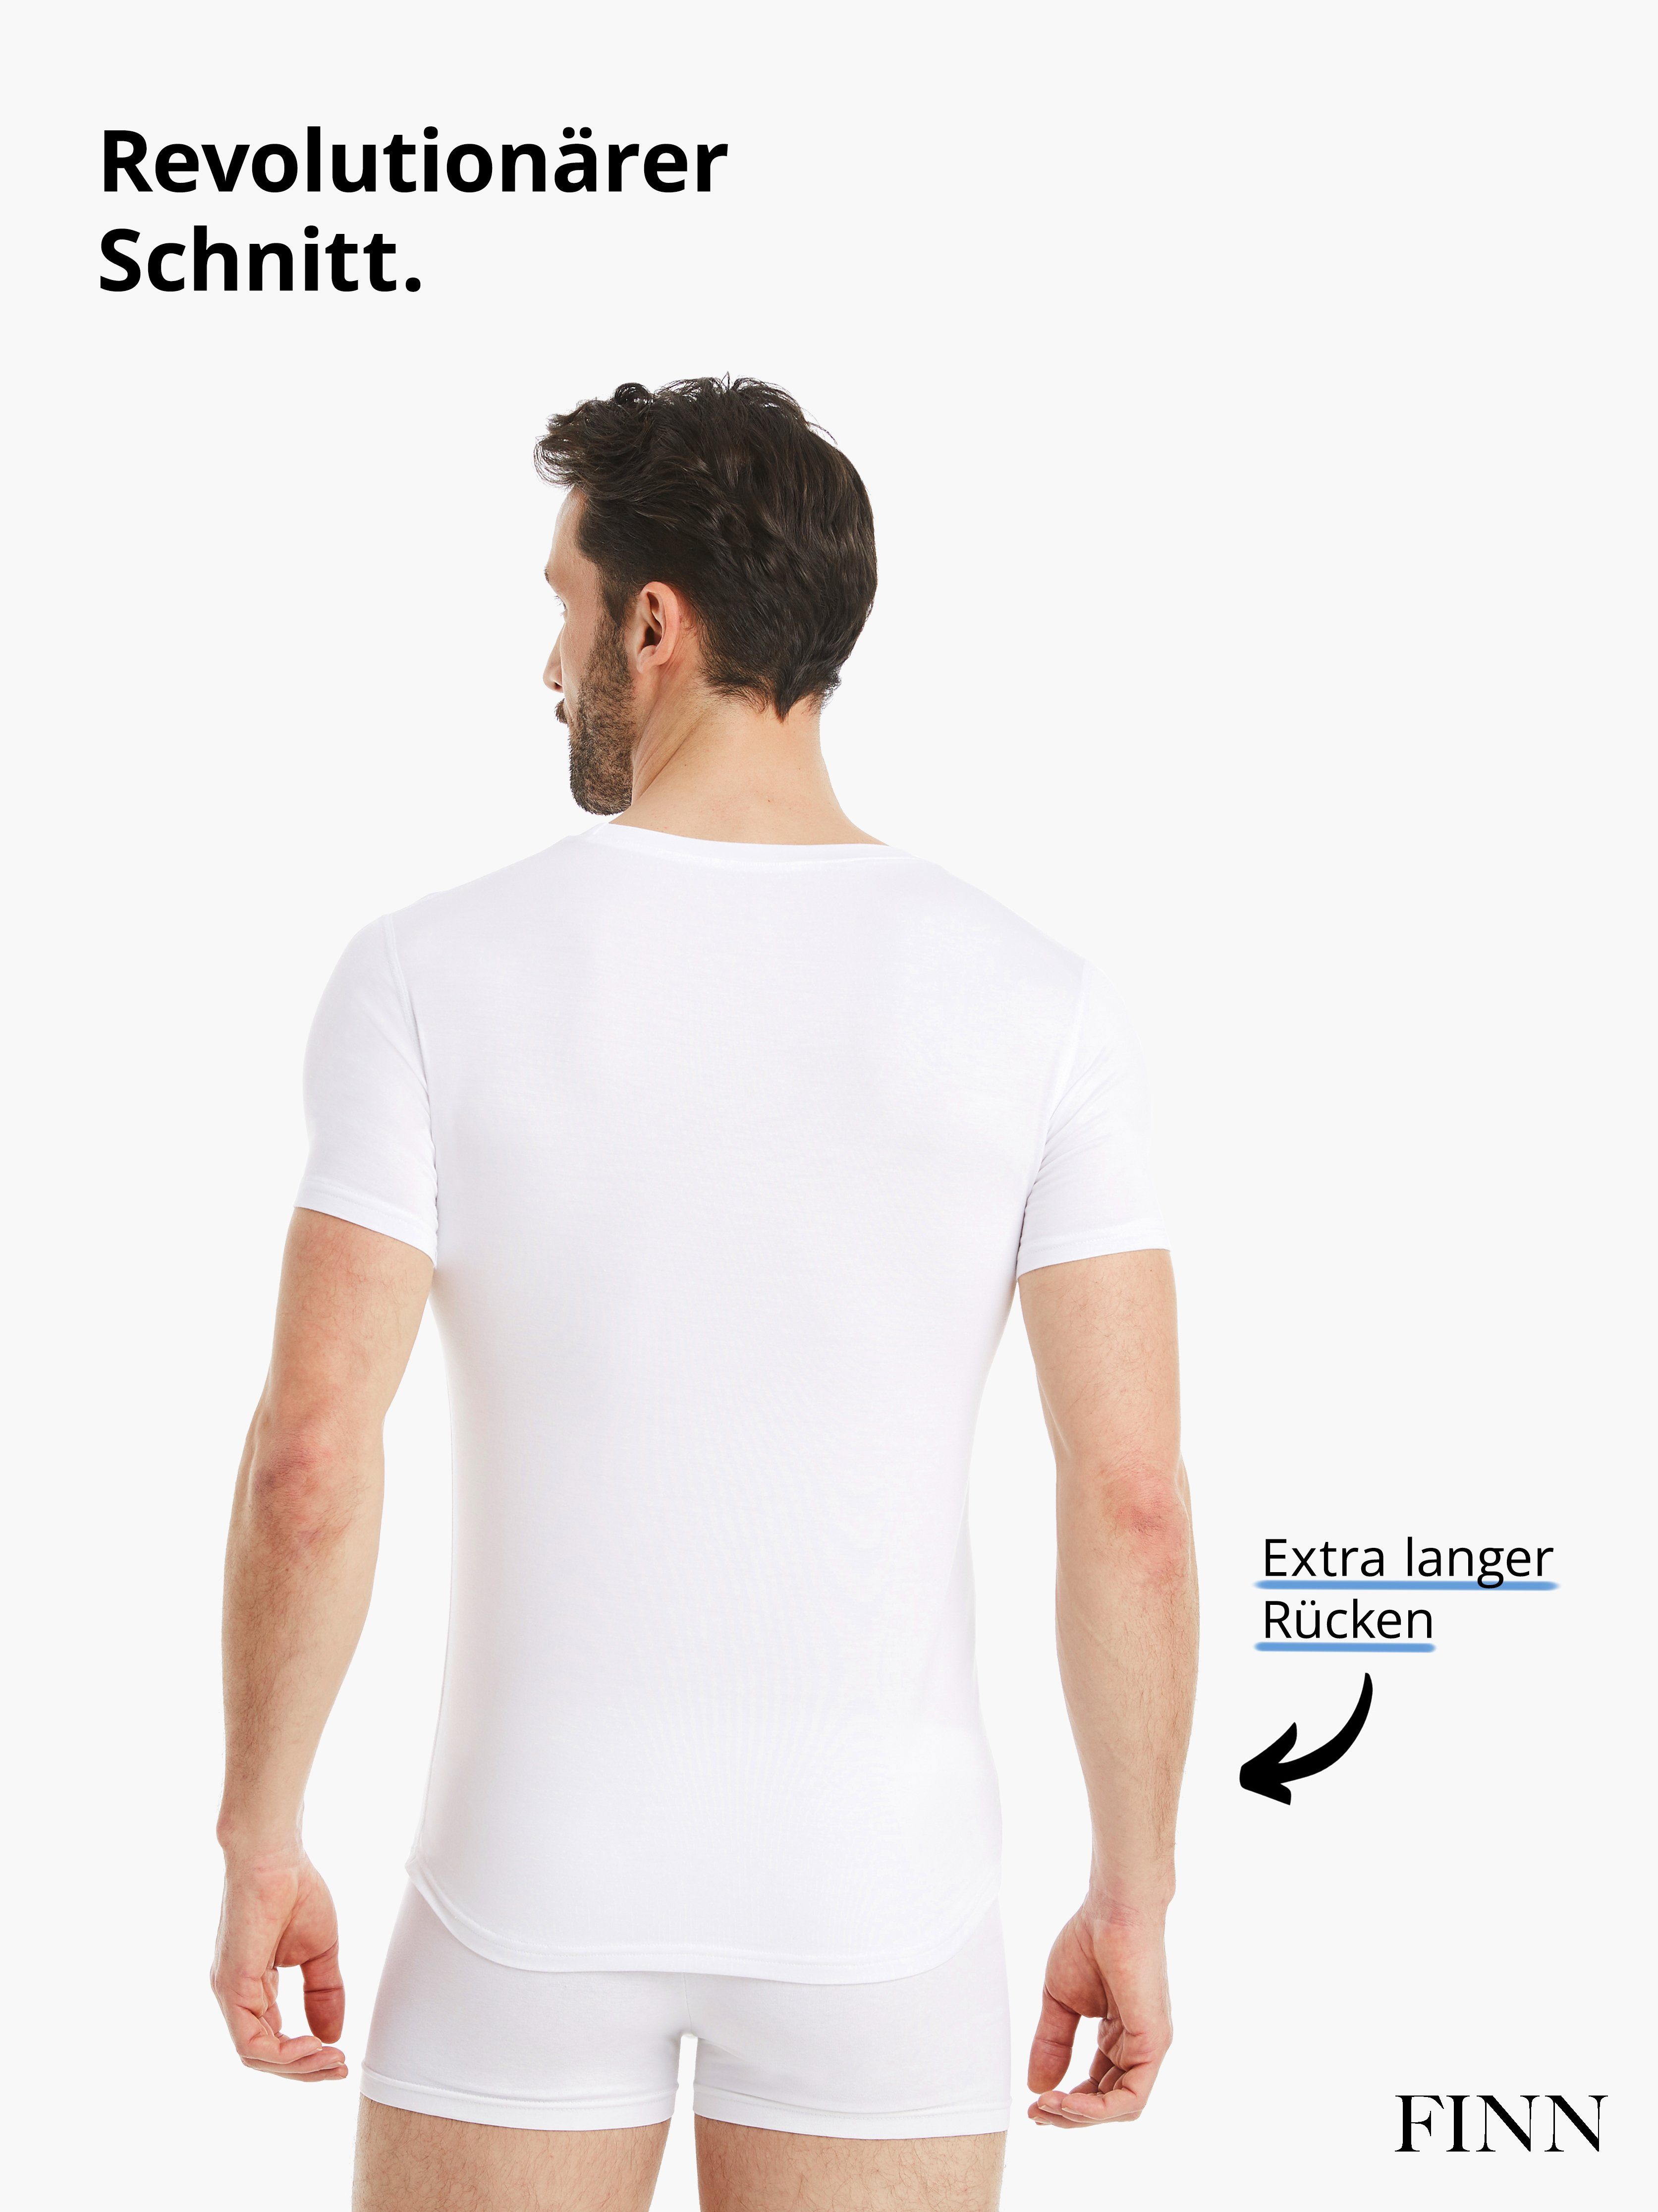 Rundhals FINN mit Unterhemd Tragekomfort Design Kurzarm Stoff, Herren feiner Unterhemd Business Weiß maximaler Micro-Modal